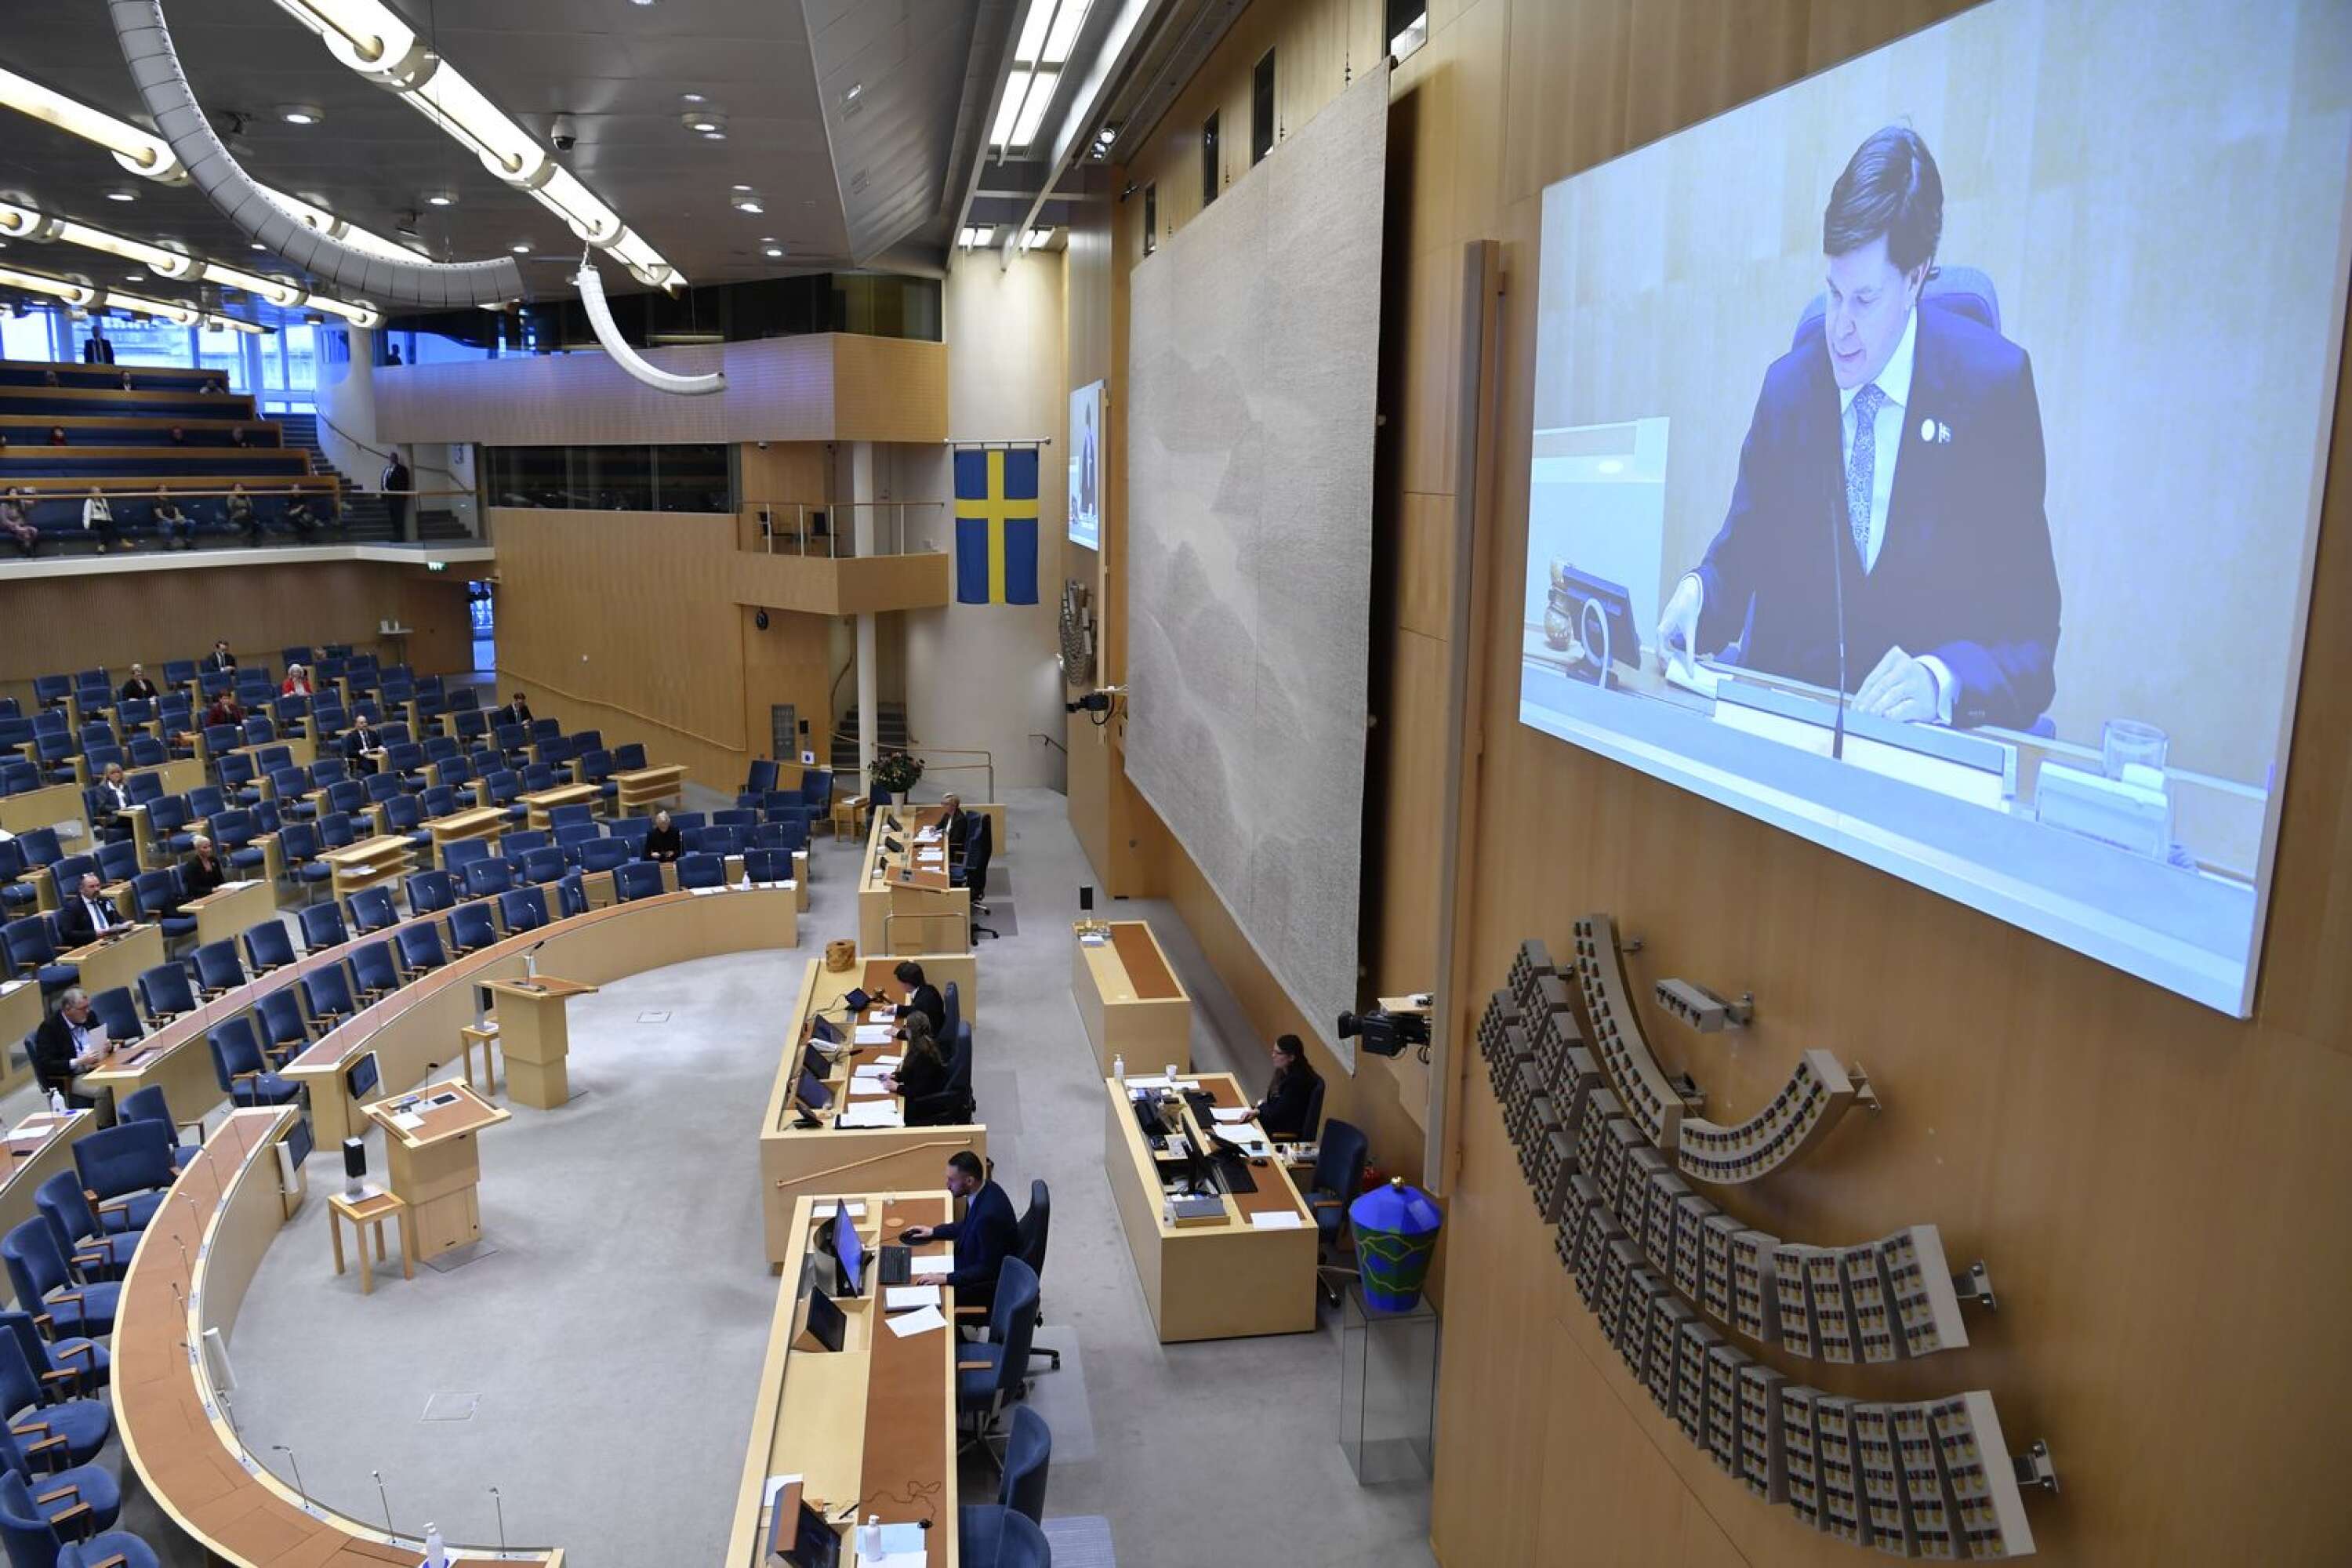 Det skapades historia i riksdagen på måndagen, när en majoritet röstade för misstroende mot statsminister Stefan Löfven. (Bilden tagen vid ett annat tillfälle).